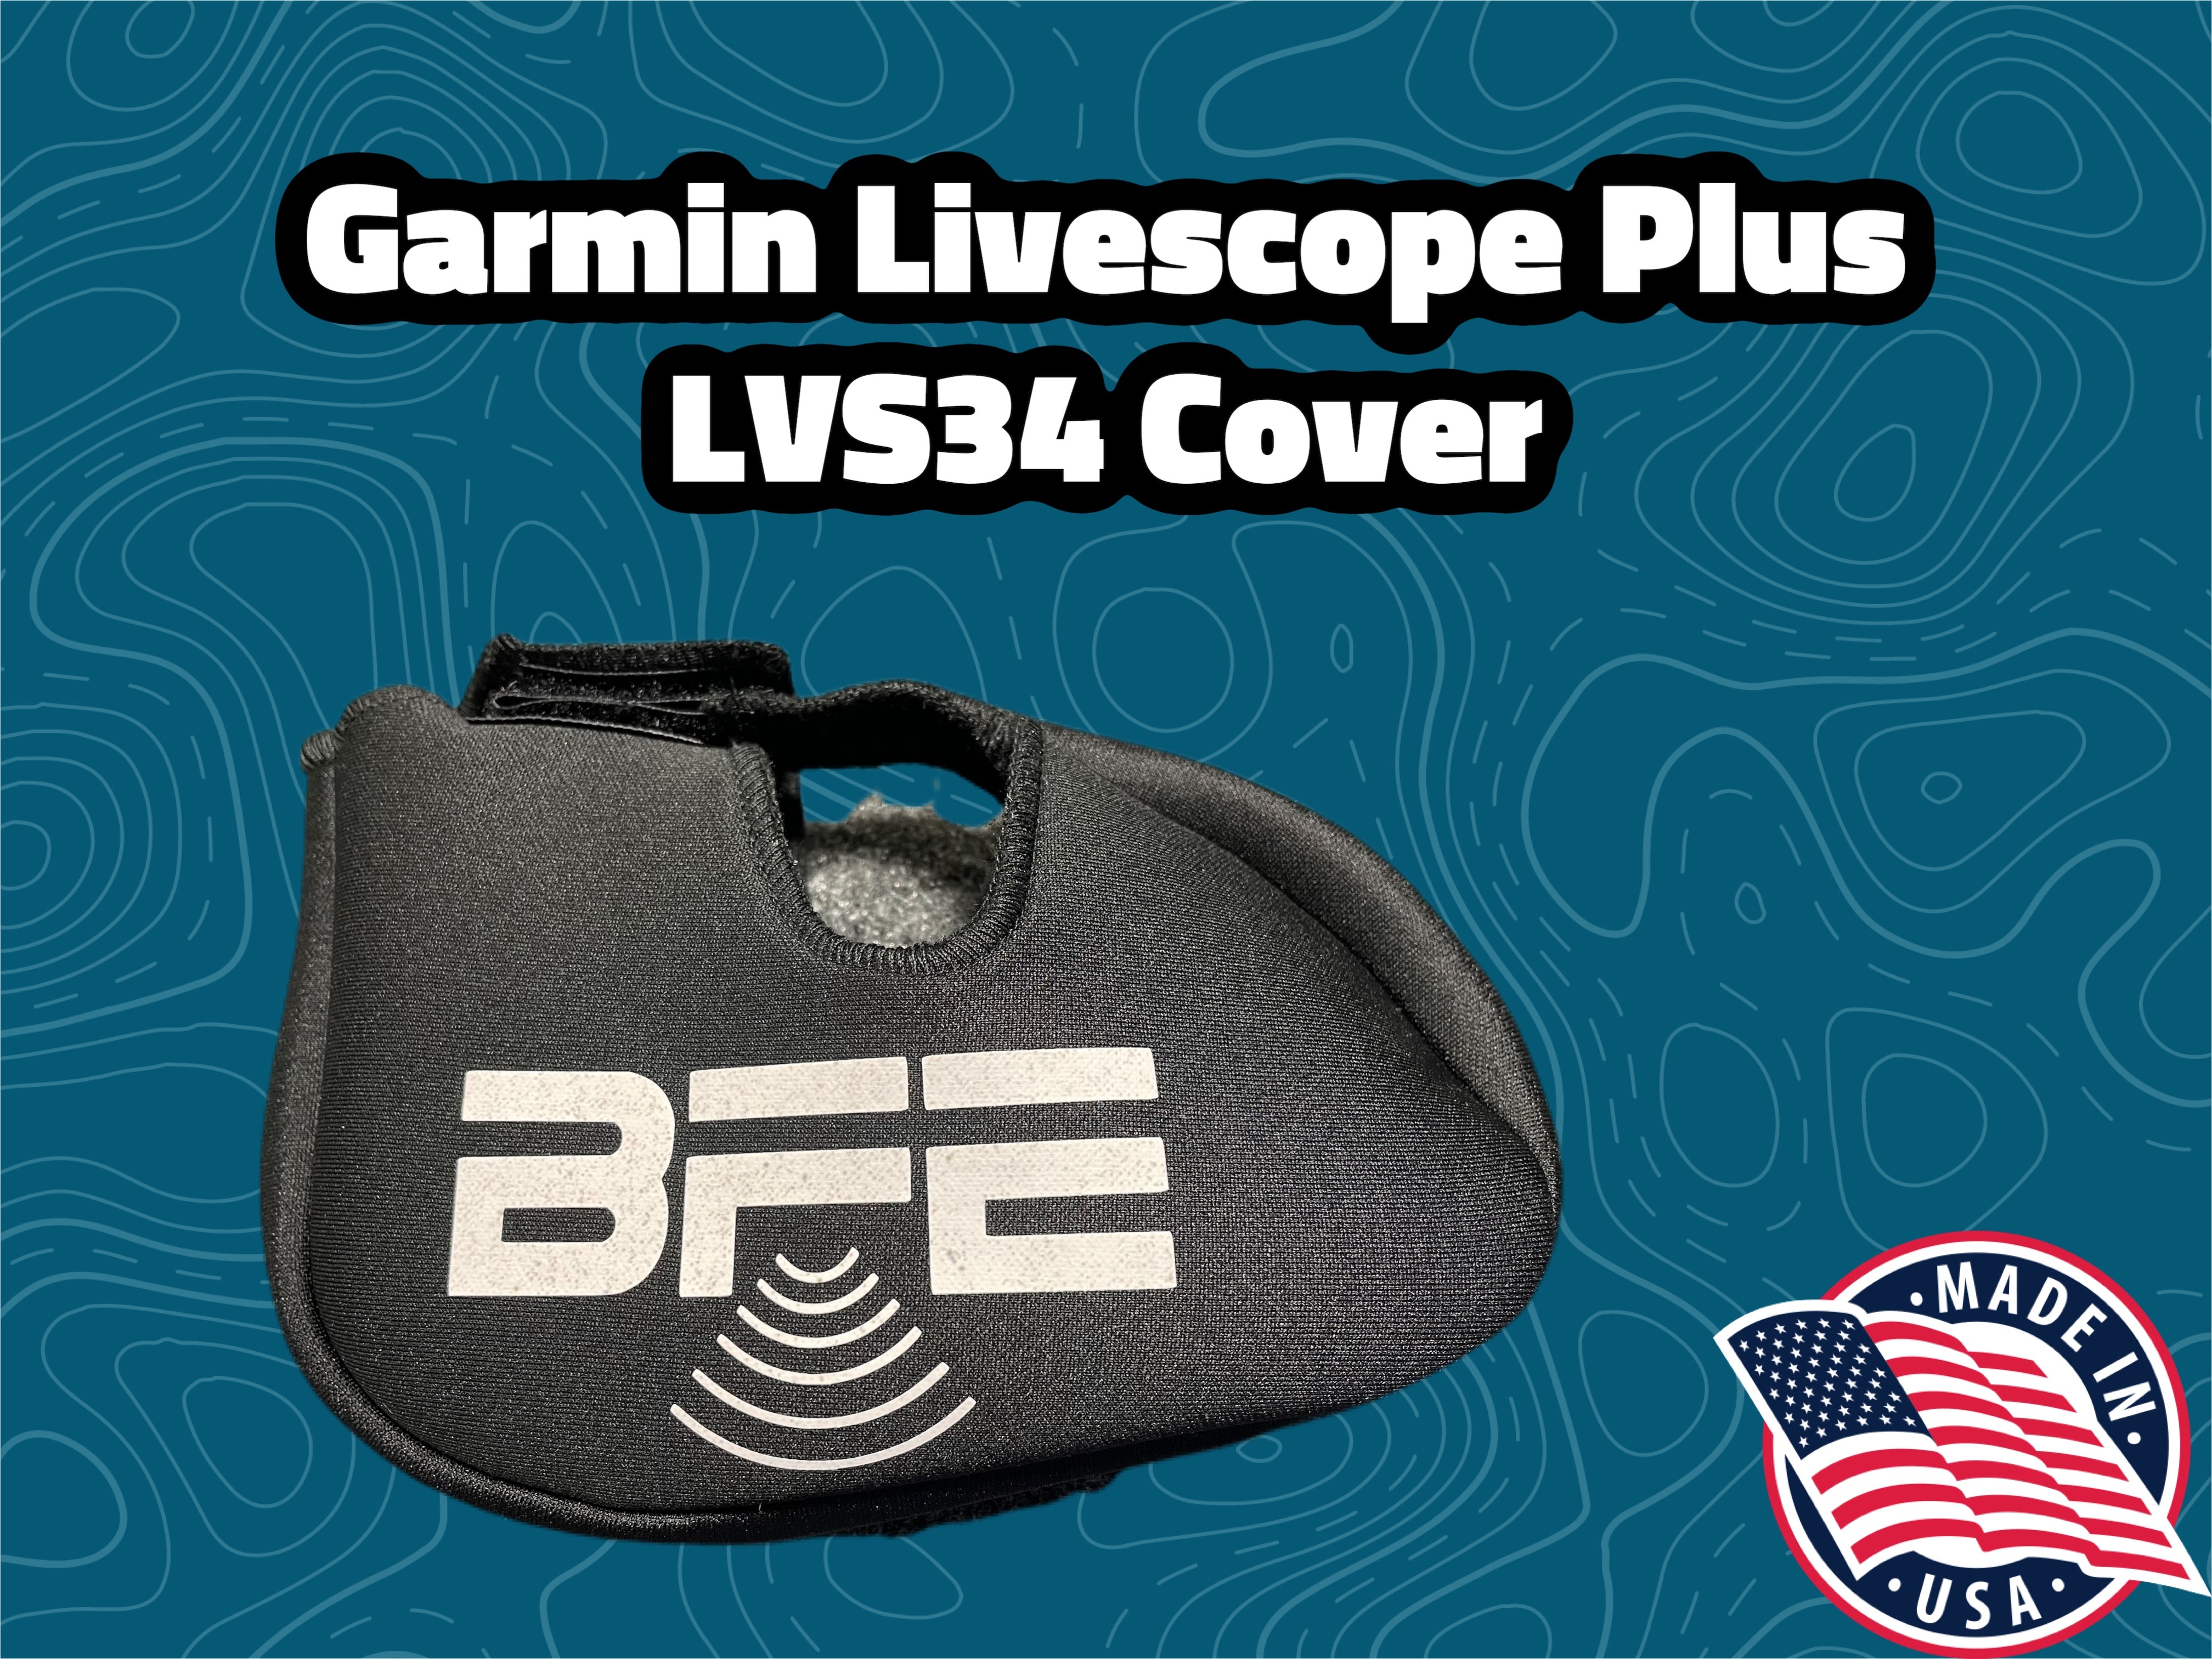 Net Buddy Travel Transducer Cover for Garmin Livescope Plus LVS34